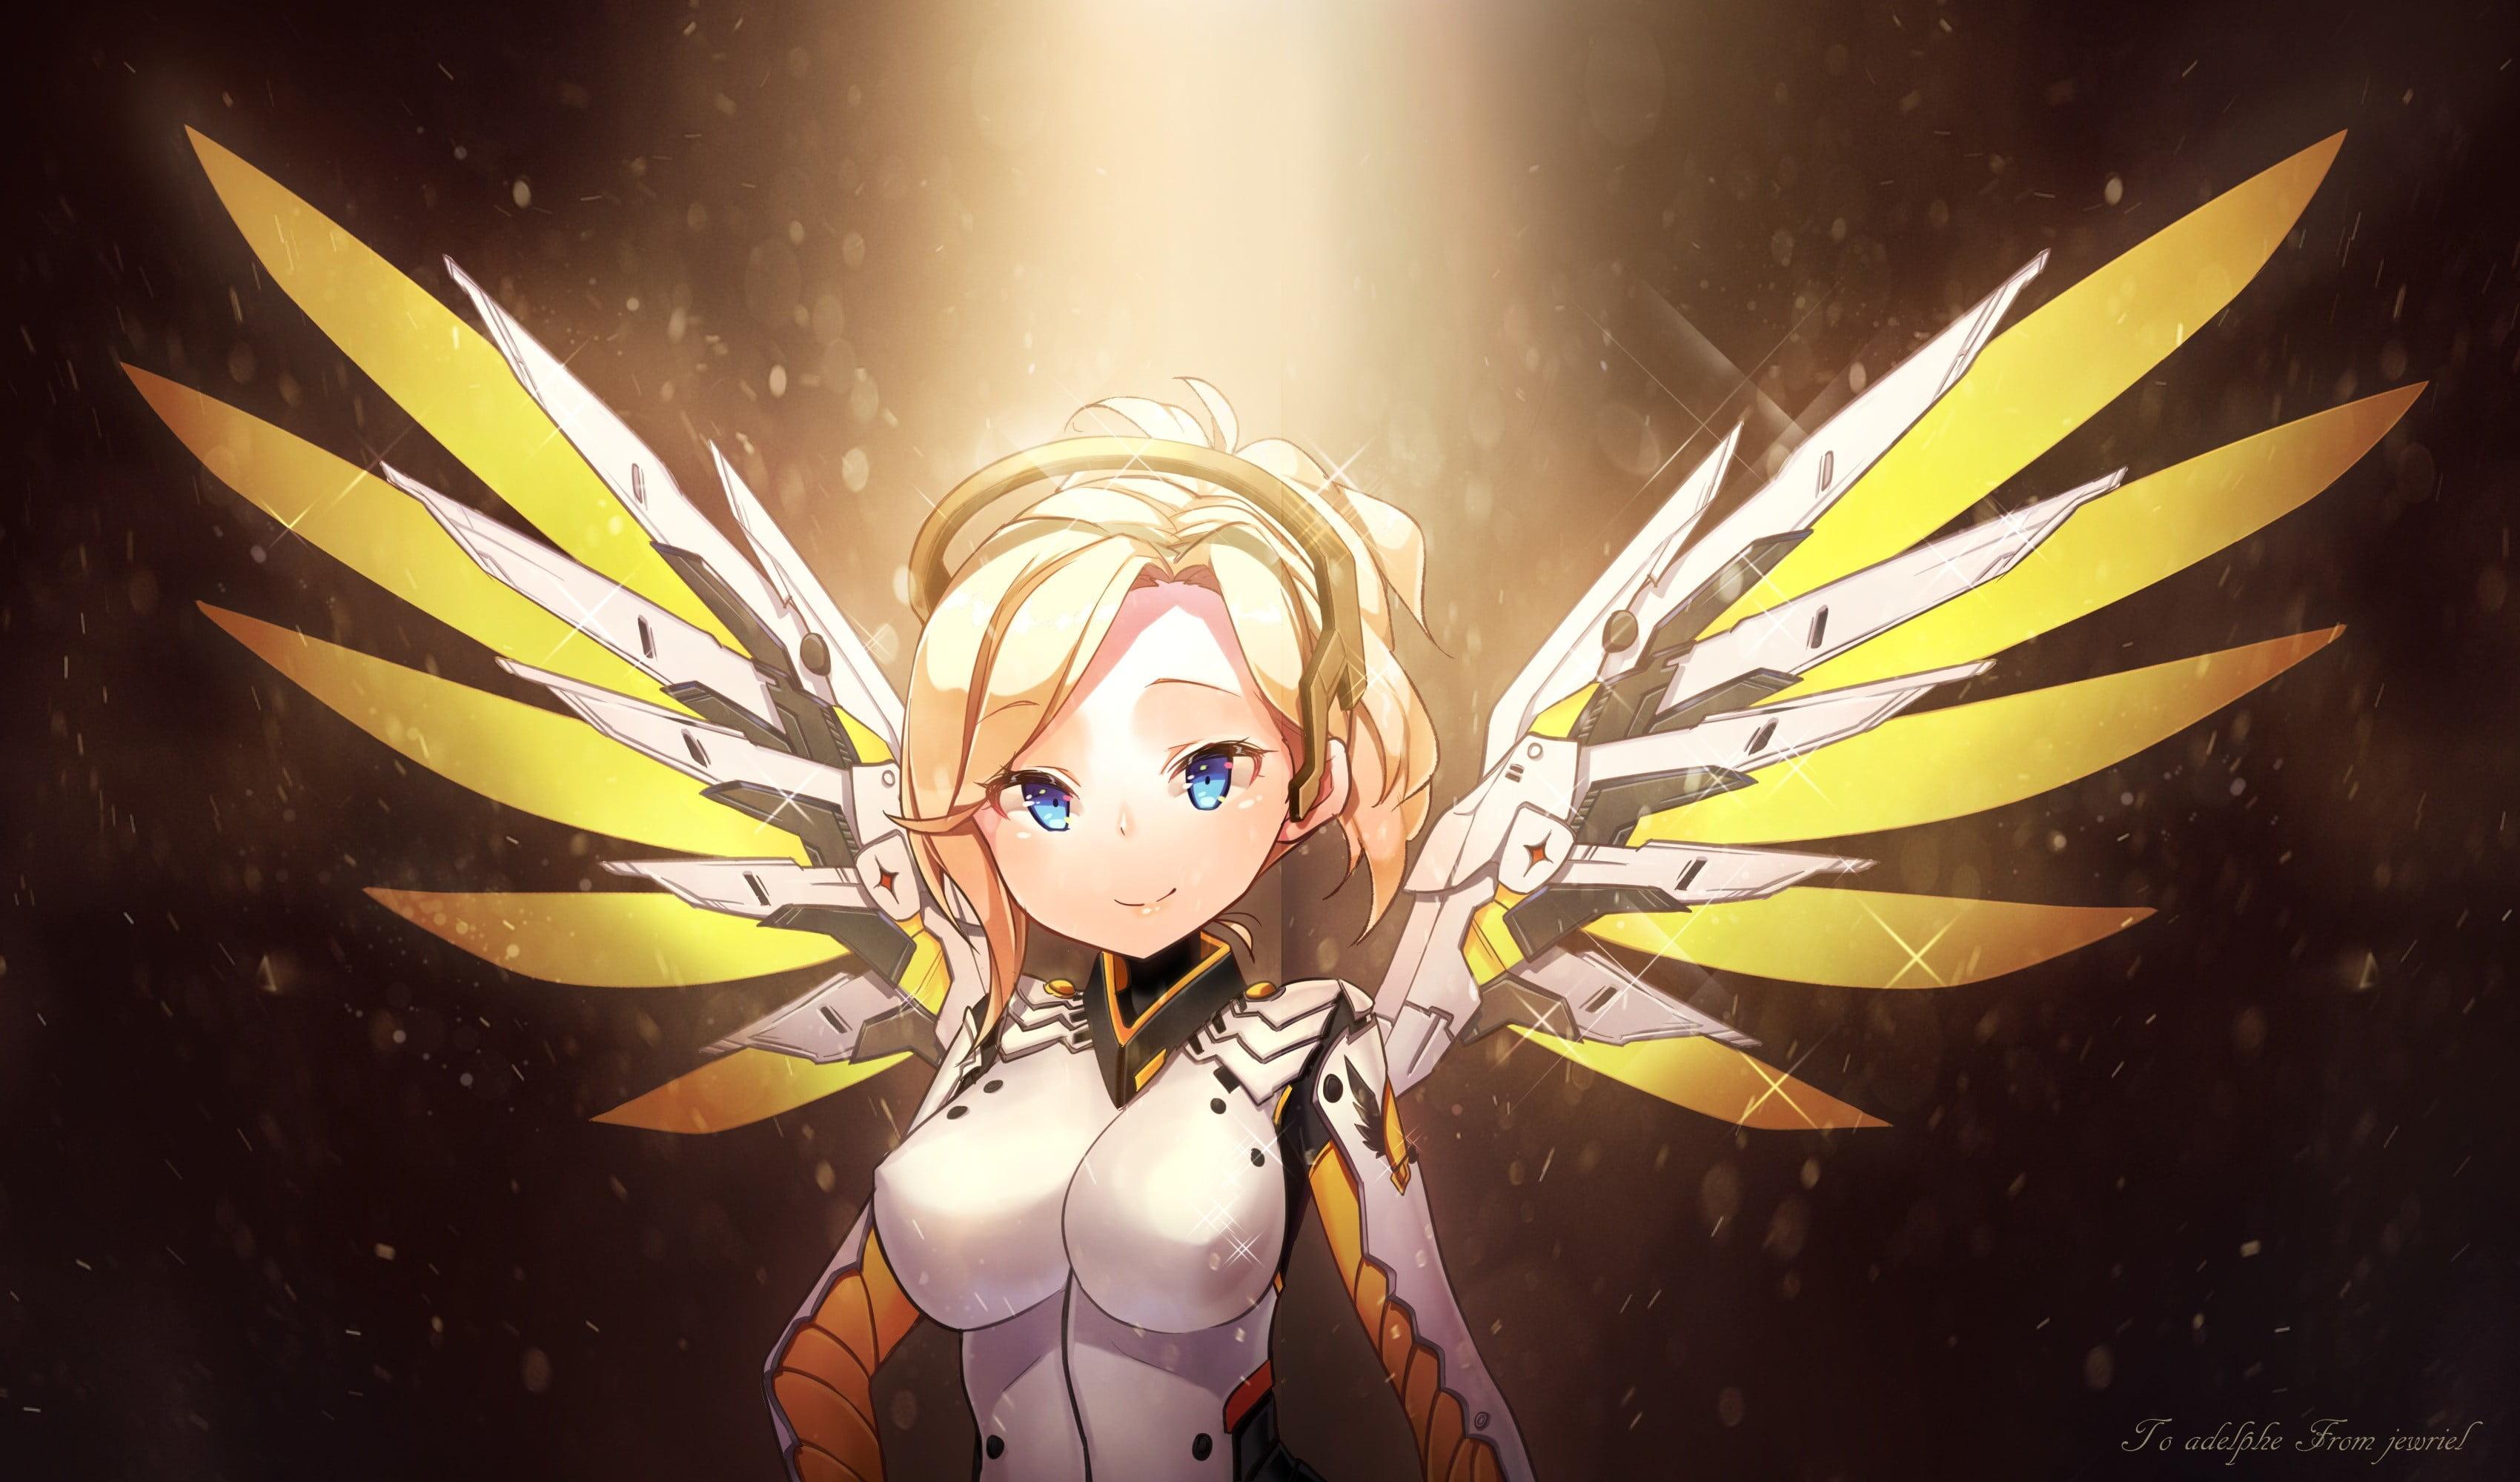 Mercy Angel Overwatch Wallpapers